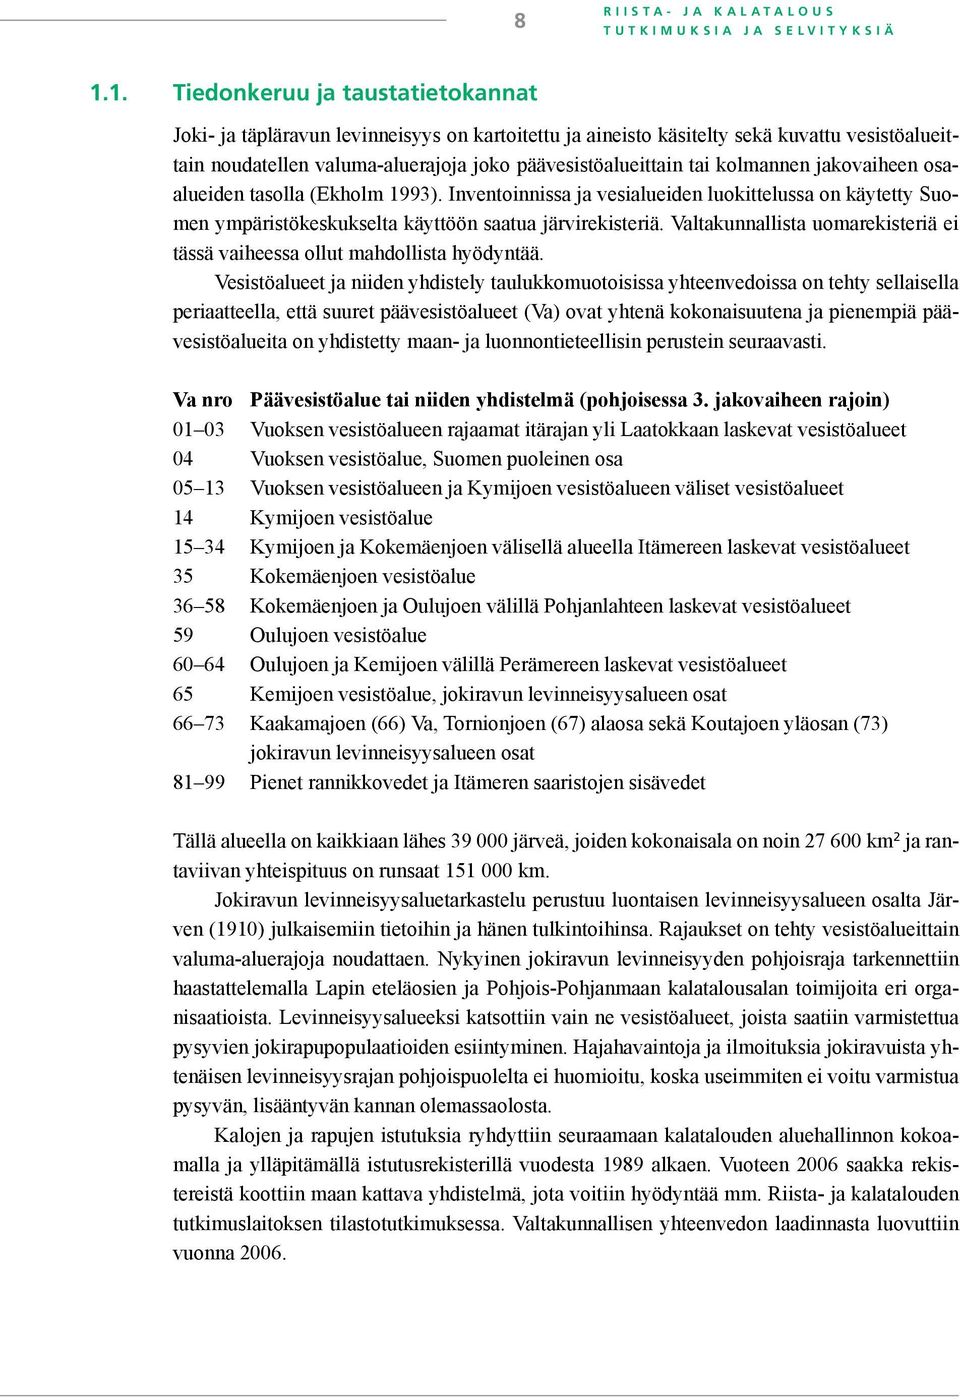 kolmannen jakovaiheen osaalueiden tasolla (Ekholm 1993). Inventoinnissa ja vesialueiden luokittelussa on käytetty Suomen ympäristökeskukselta käyttöön saatua järvirekisteriä.